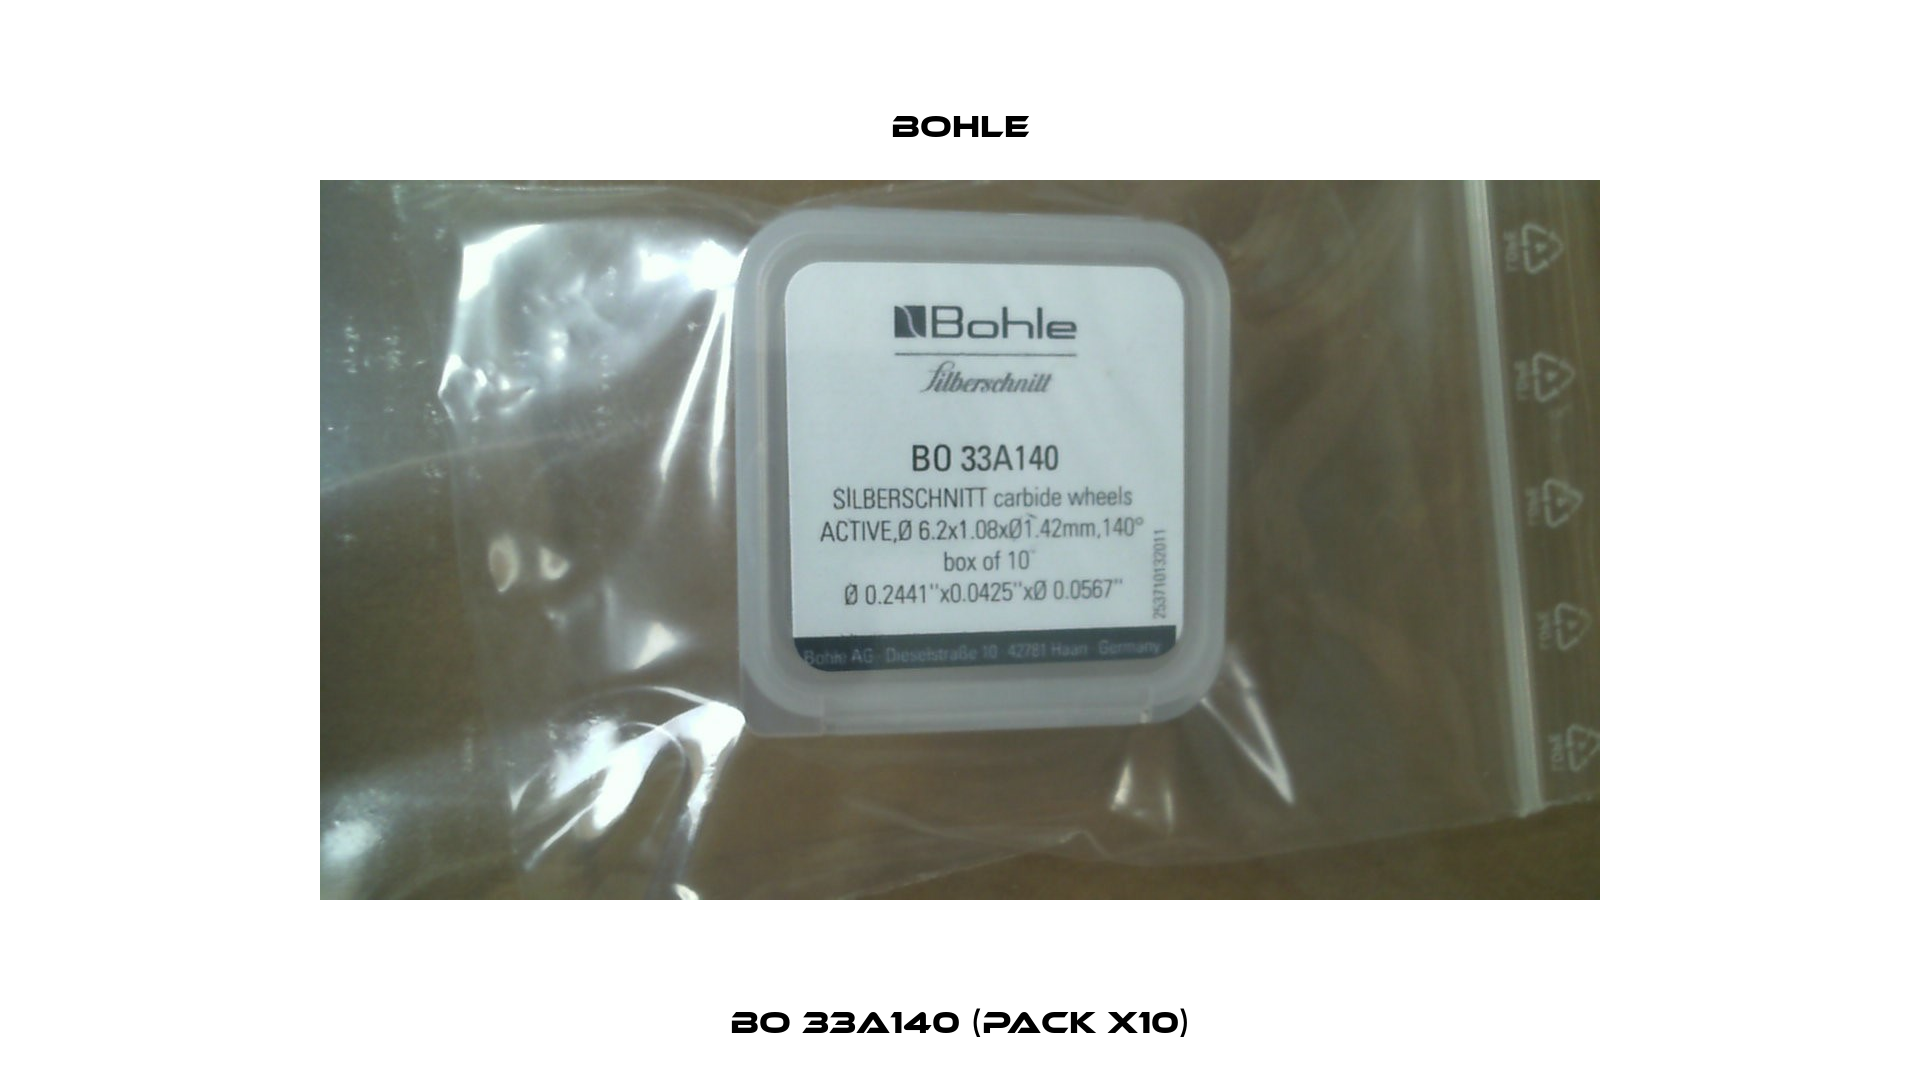 BO 33A140 (pack x10) Bohle